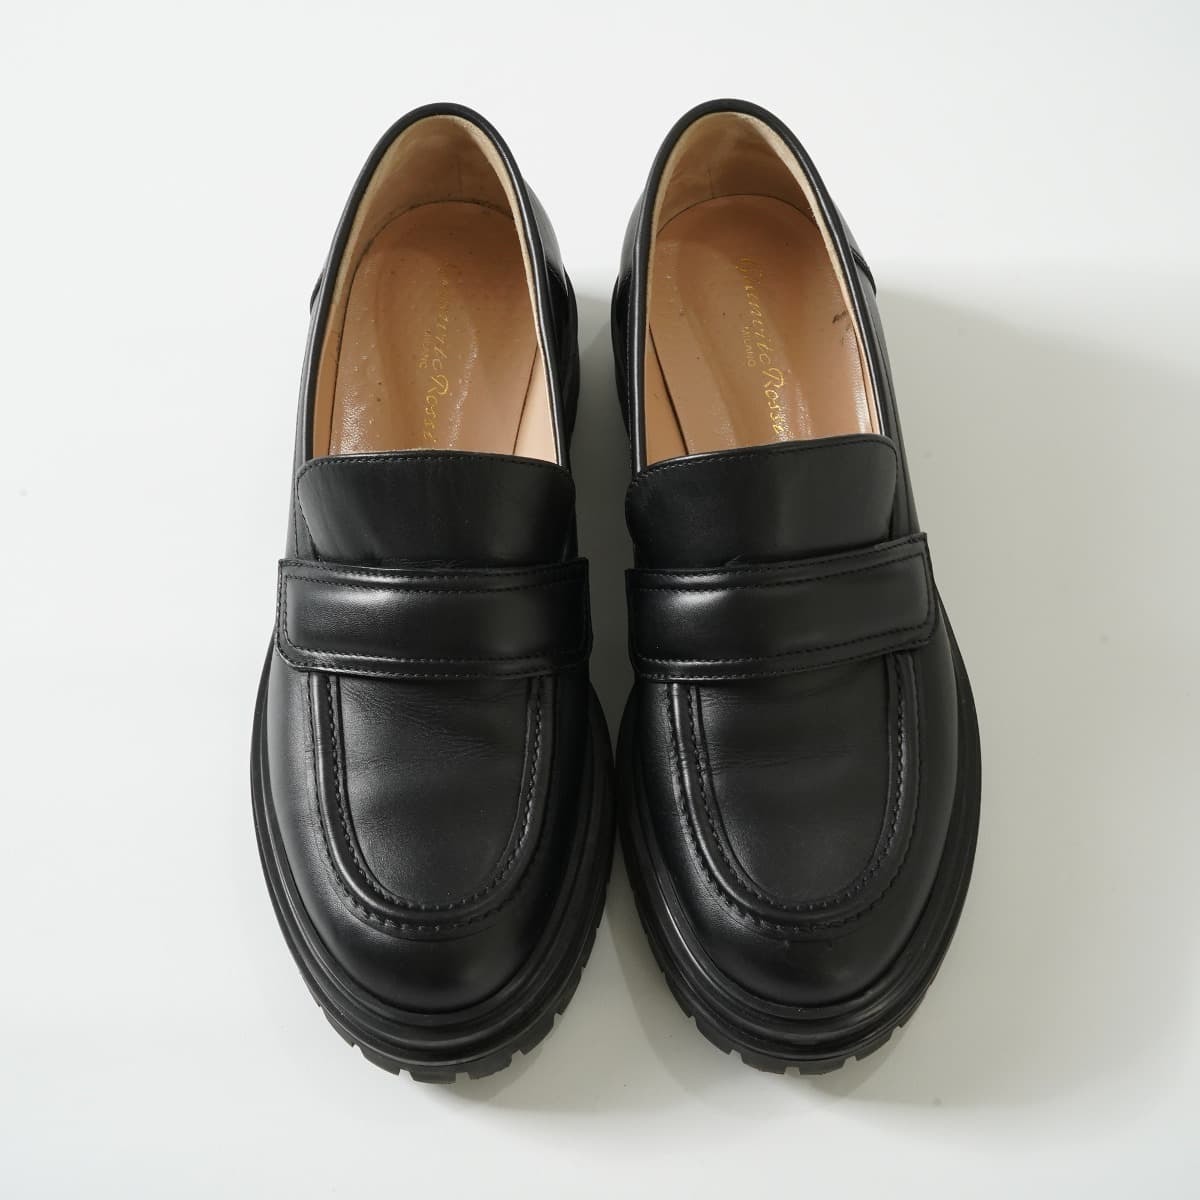  обычная цена 12 десять тысяч L\'Appartementa Pal tomonGIANVITO ROSSI Jean vi to Rossi ARGO Loafer кожа 38 24cm толщина низ обувь обувь 21S чёрный 